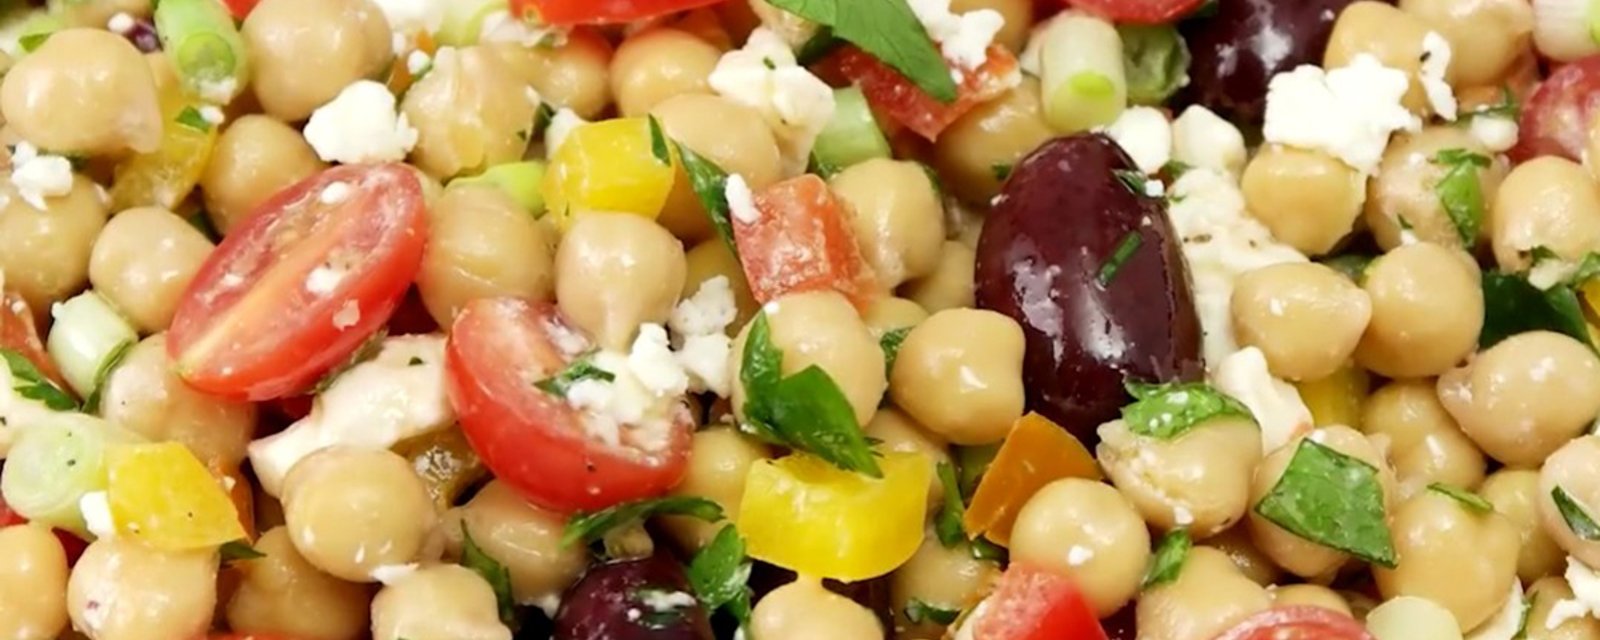 Manger santé n'aura jamais été aussi bon! Voici l'excellente salade de pois chiches méditerranéenne 